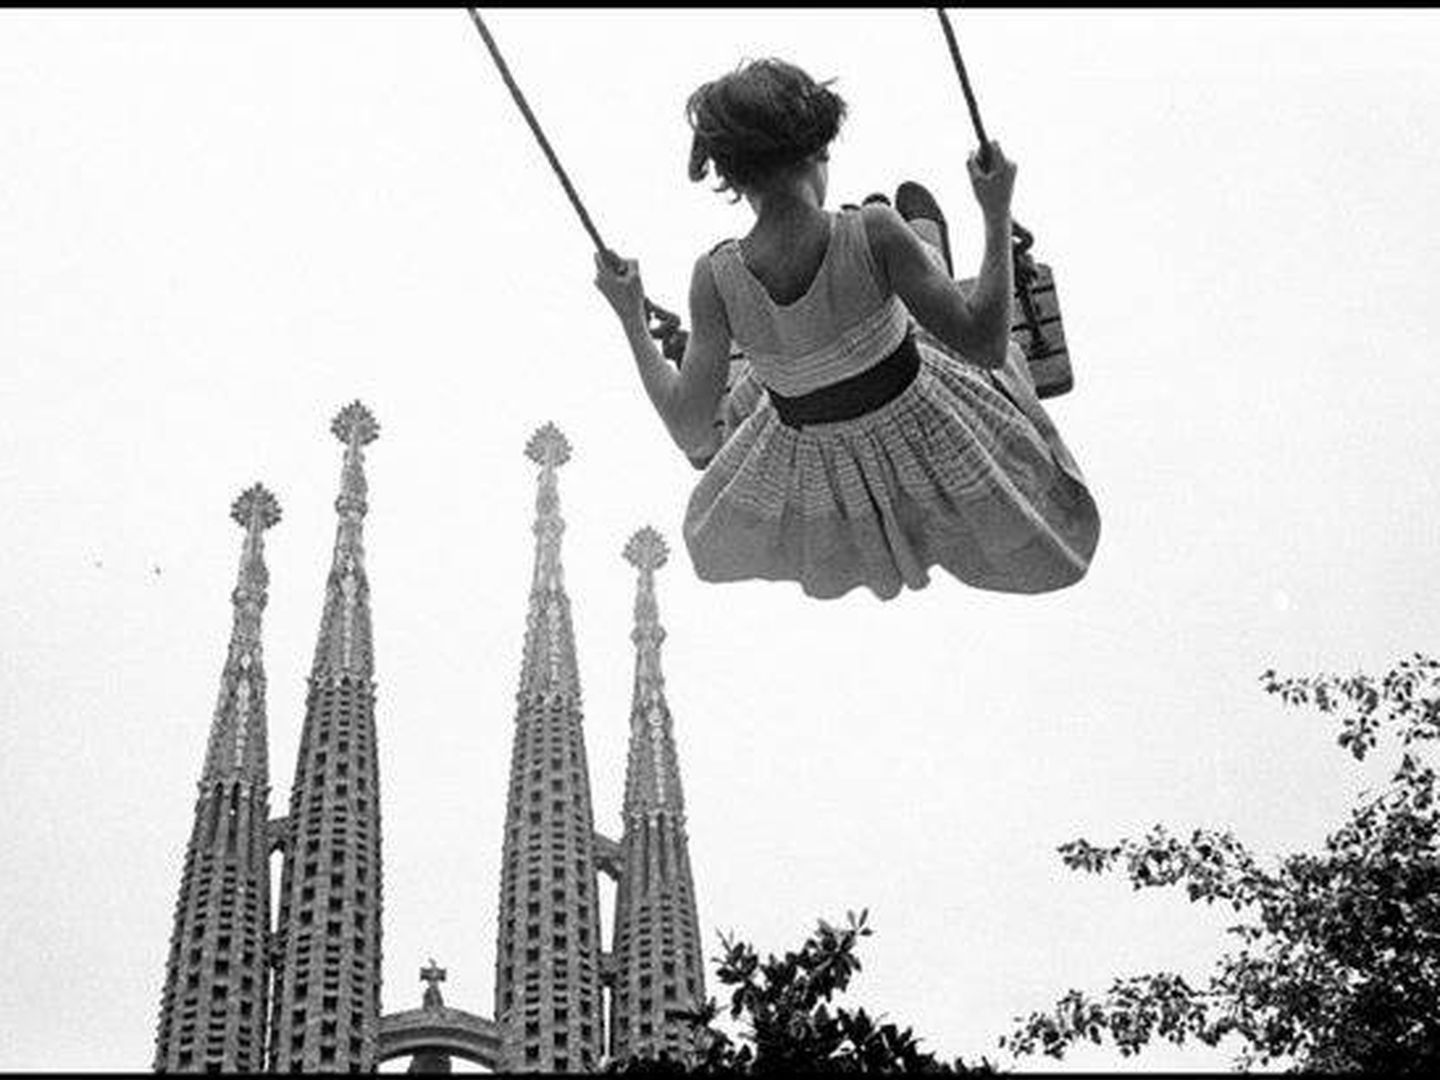 La Sagrada Familia, en 1959. (Burt Glinn)